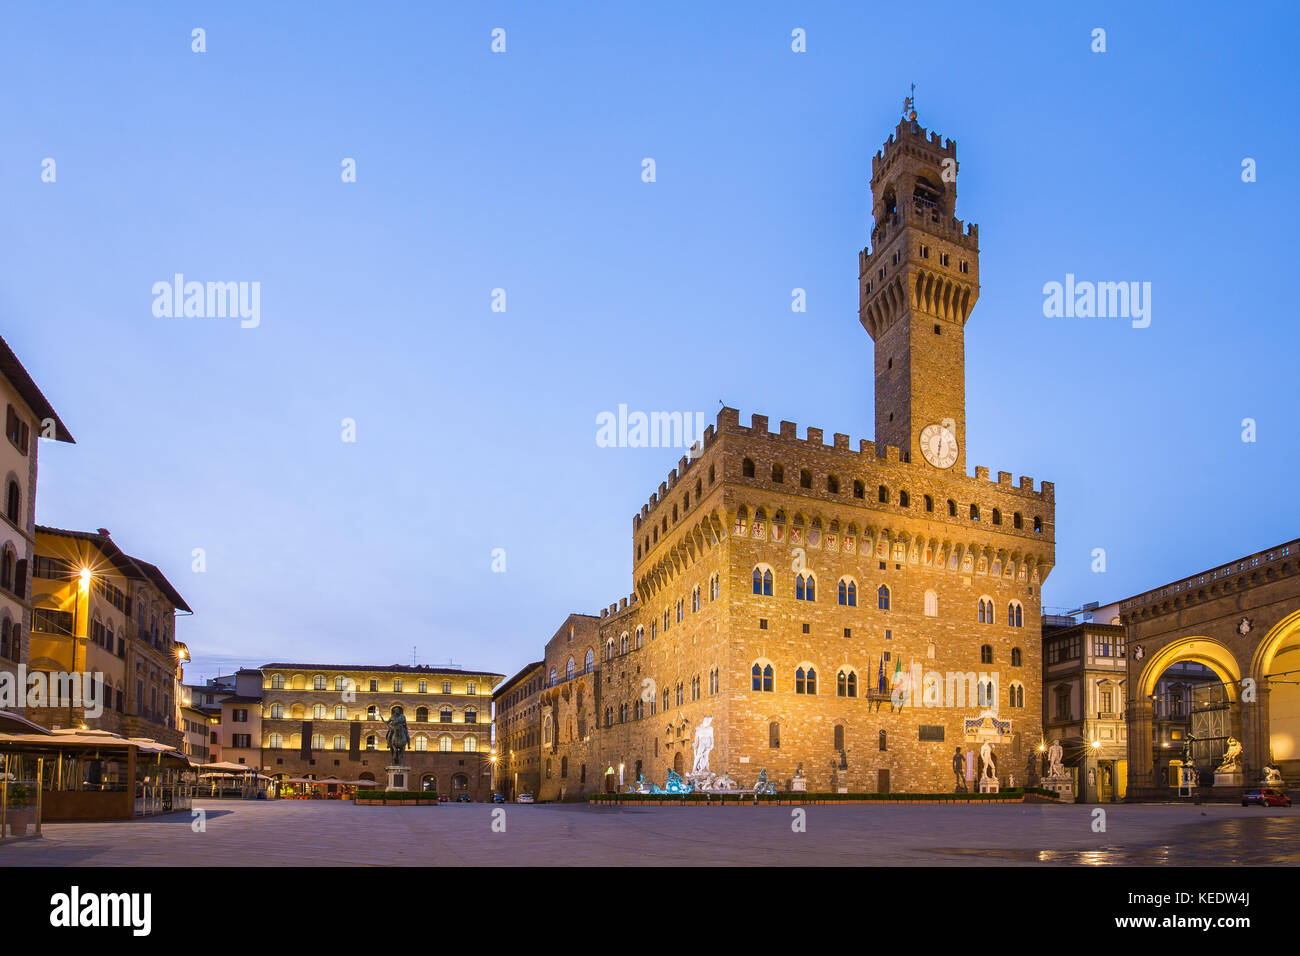 Piazza della Signoria vor dem Palazzo Vecchio in Florenz, Italien. Stockfoto